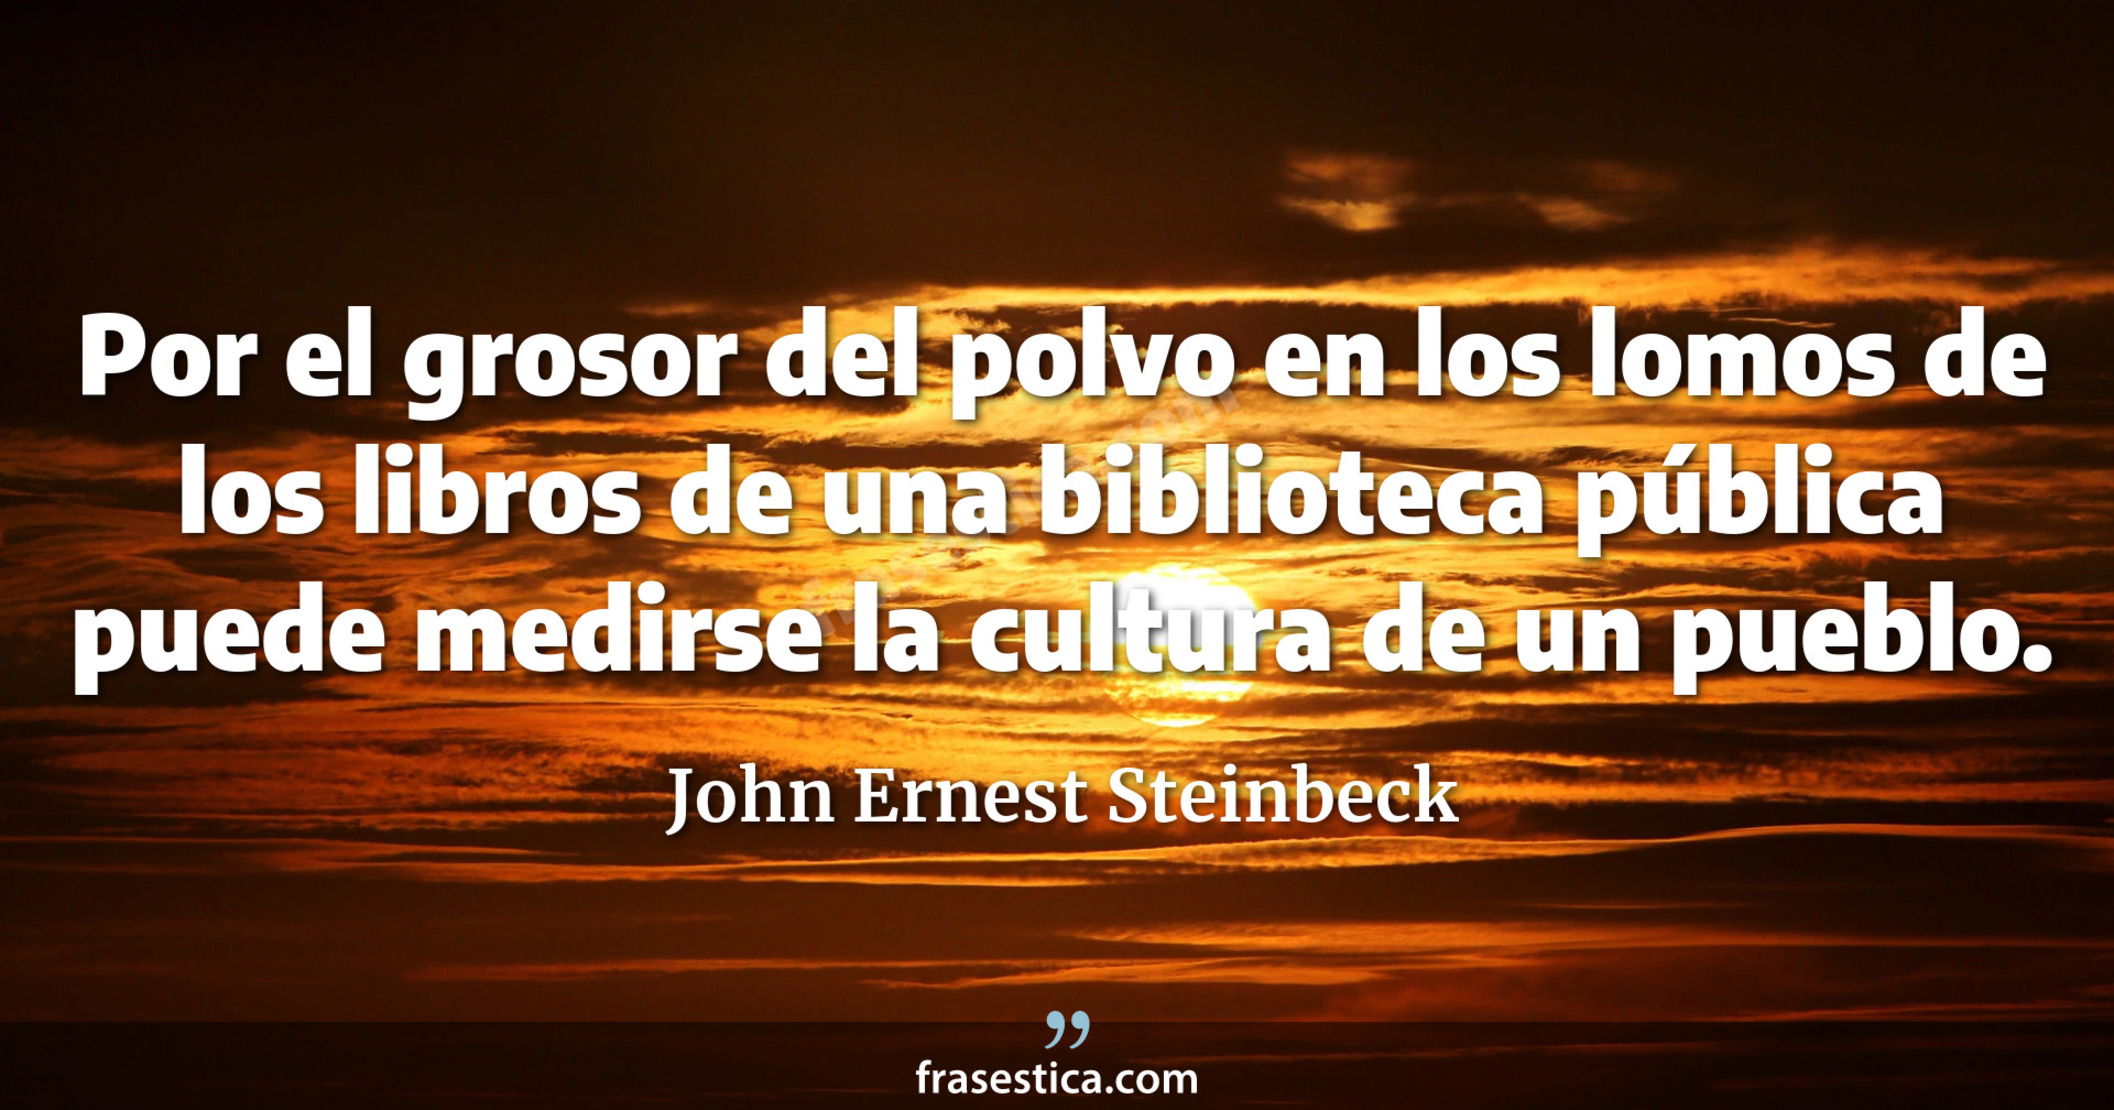 Por el grosor del polvo en los lomos de los libros de una biblioteca pública puede medirse la cultura de un pueblo. - John Ernest Steinbeck